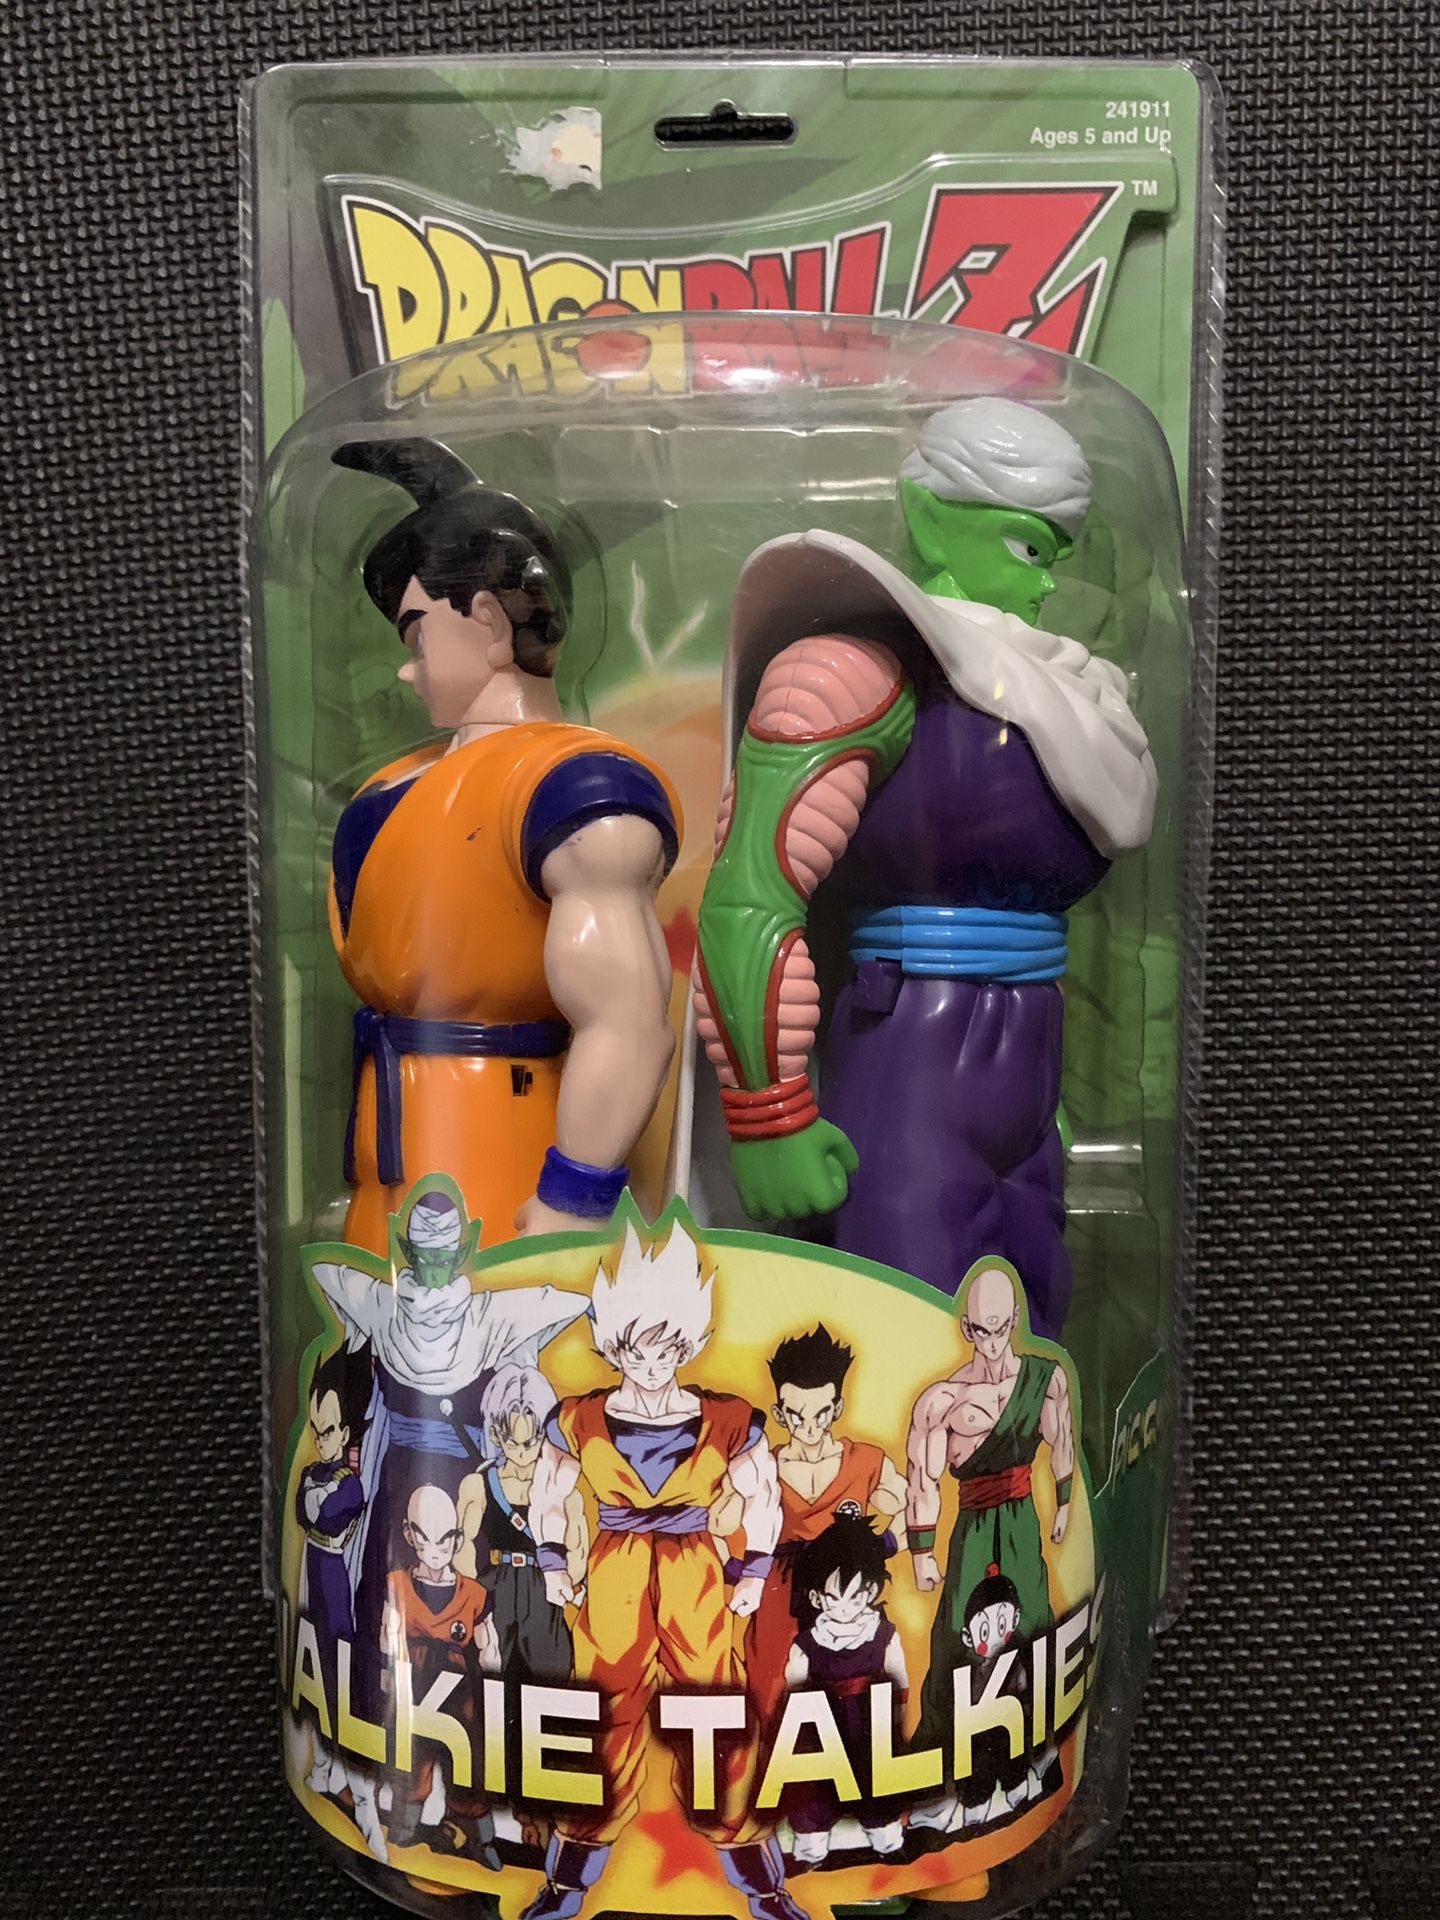 Dragonball Z Goku and Piccolo Walkie-Talkie.